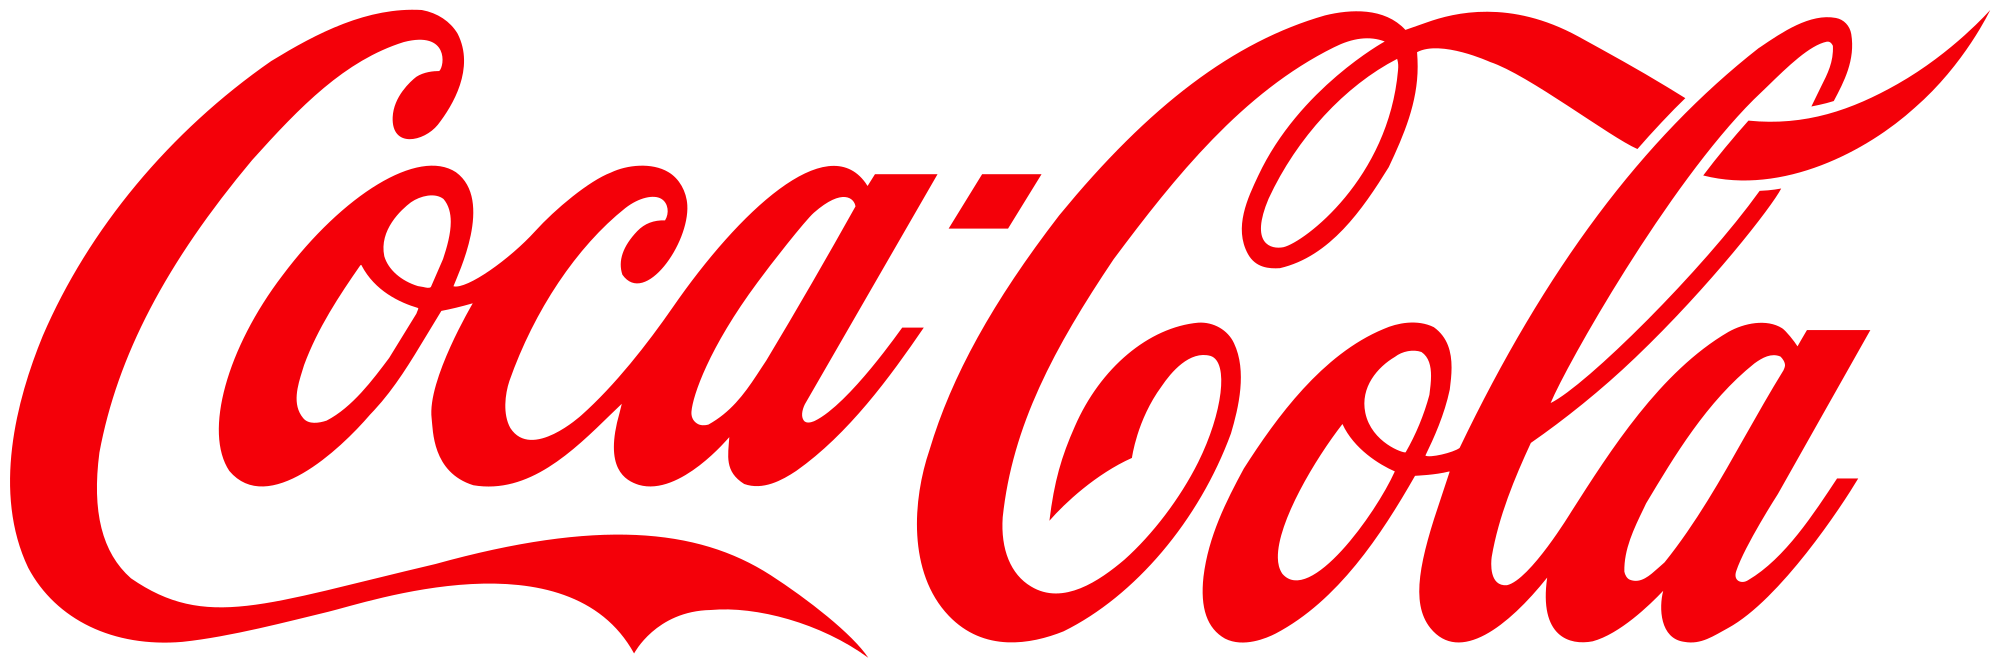 logo-coca_color